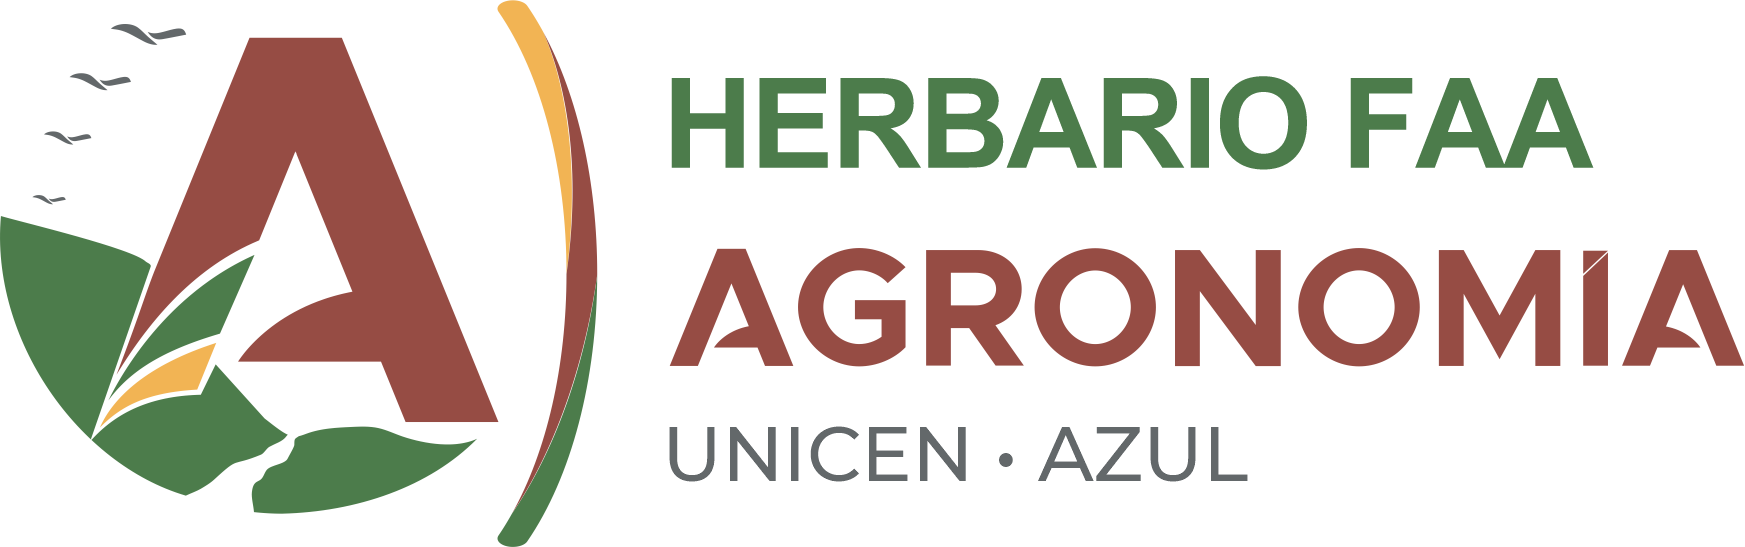 Herbario FAA - Facultad de Agronomía - UNICEN